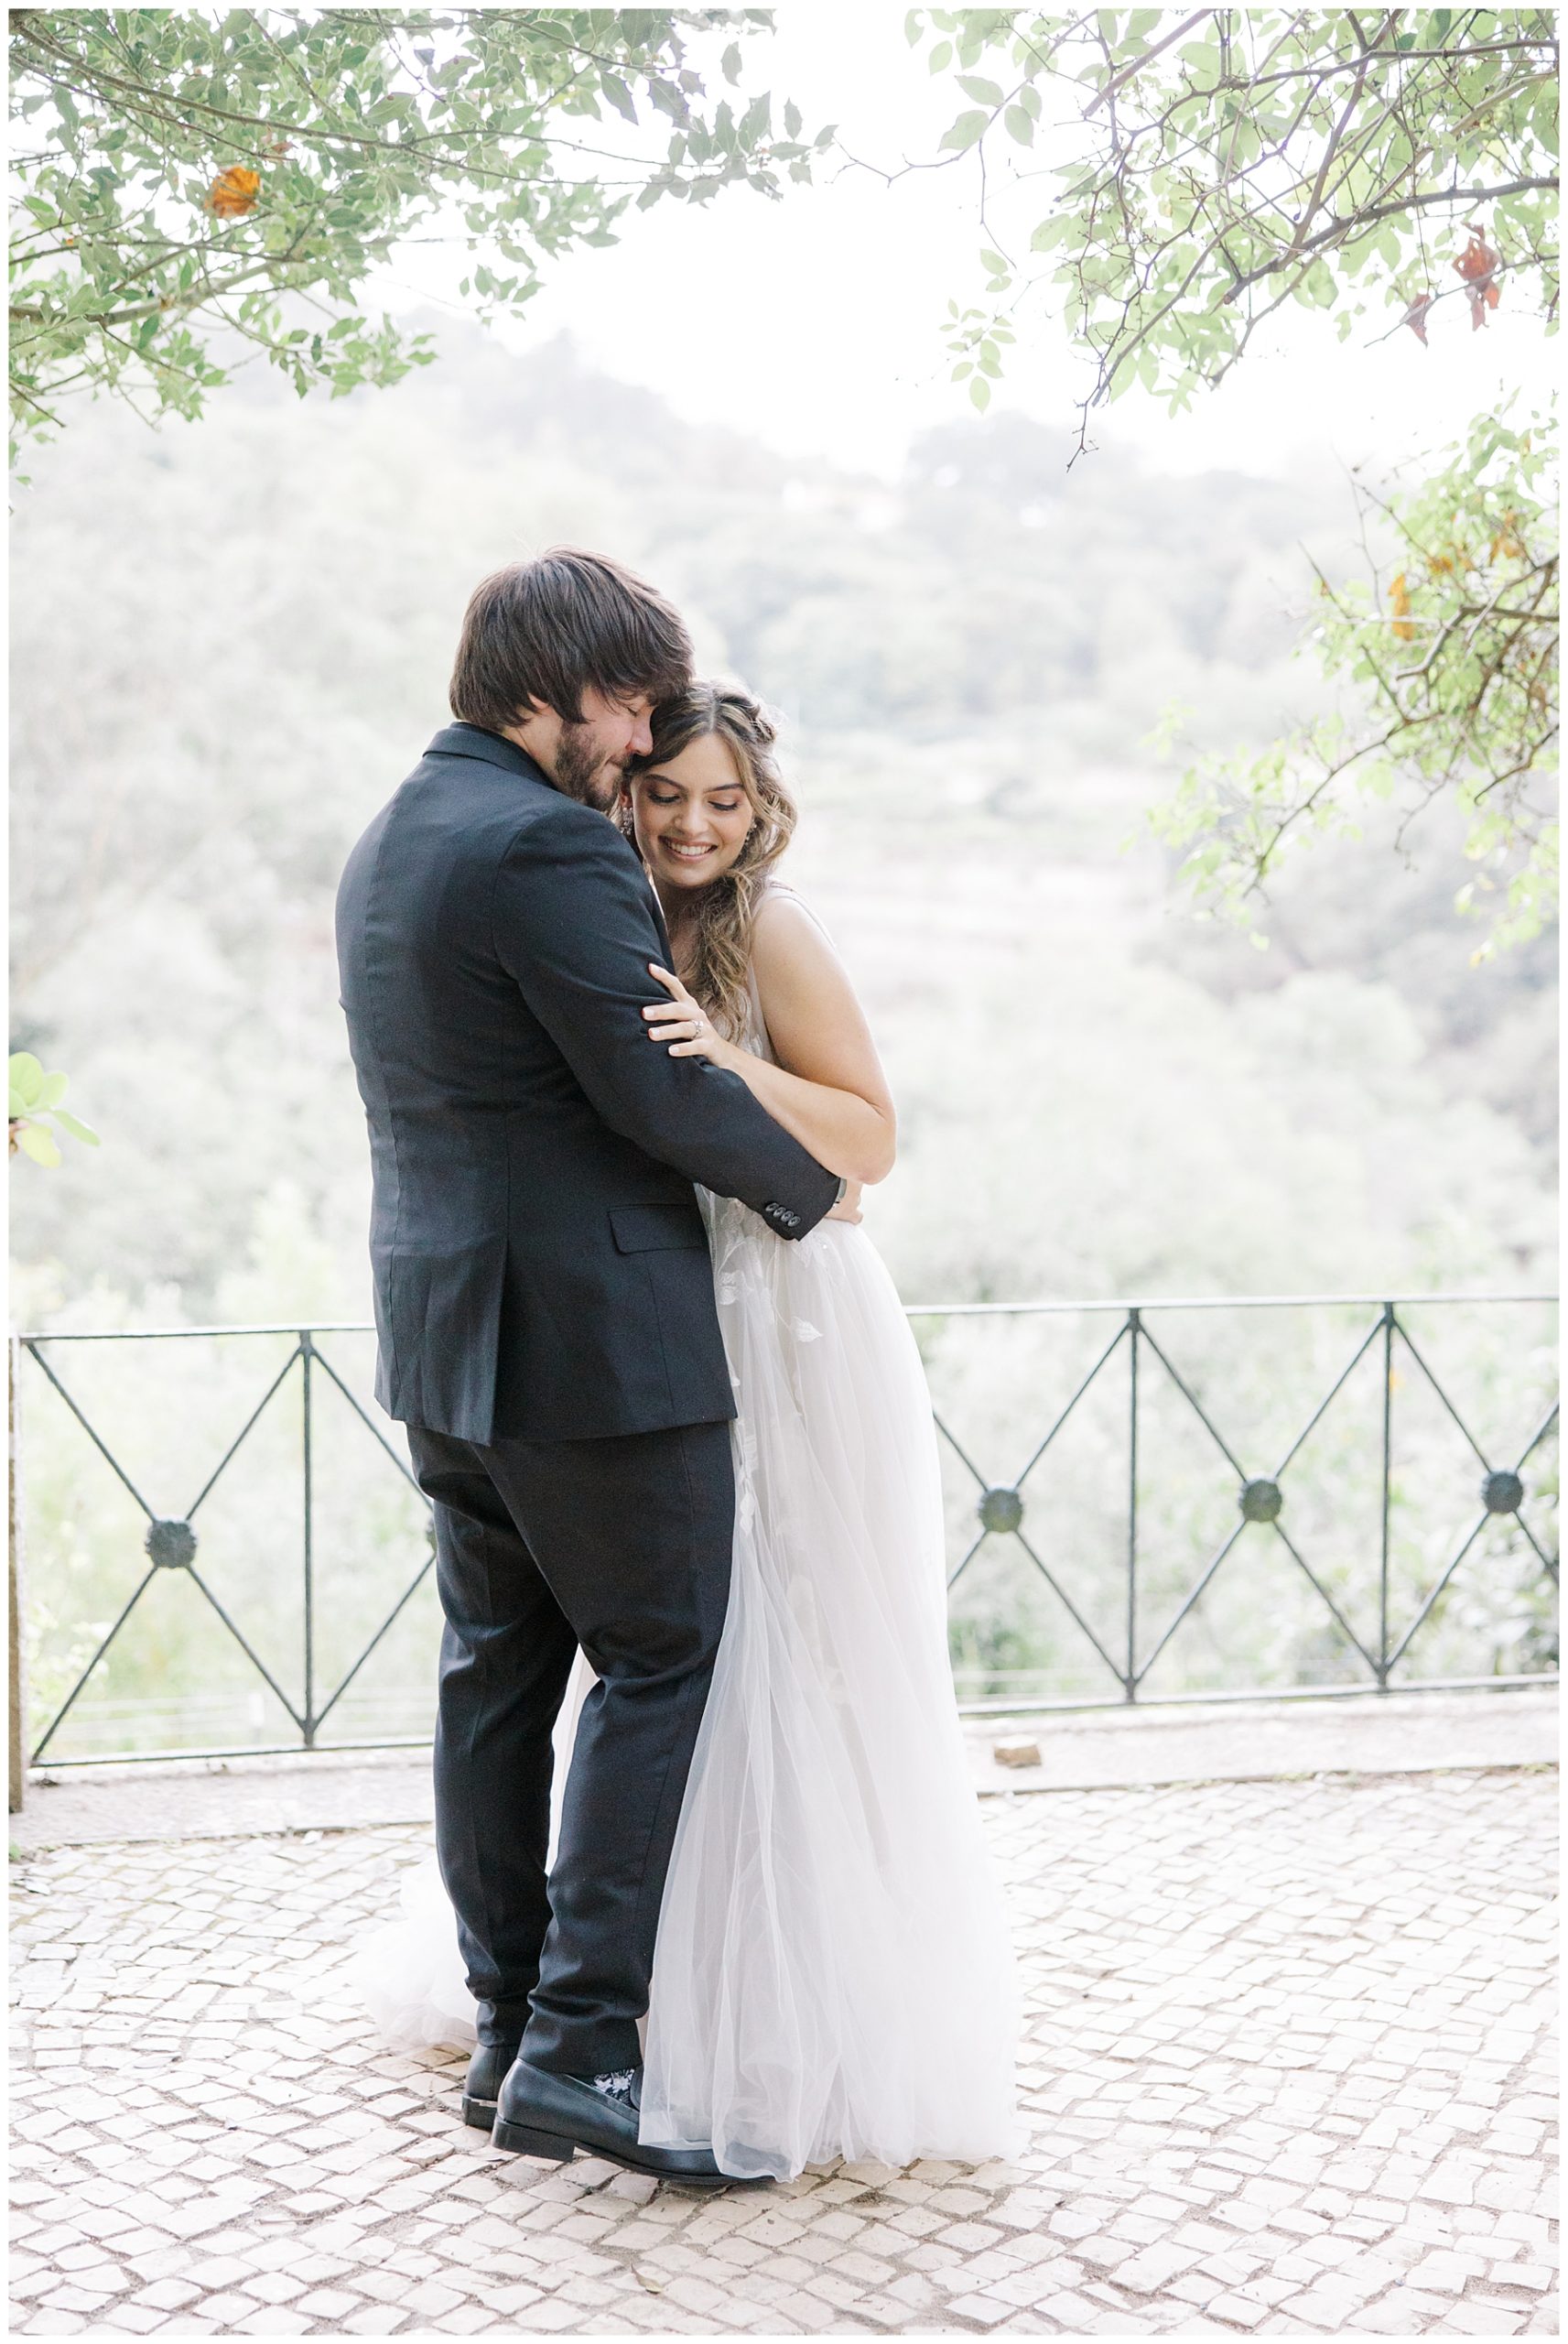 romantic wedding portraits at Casa de Paderna in Portugal 